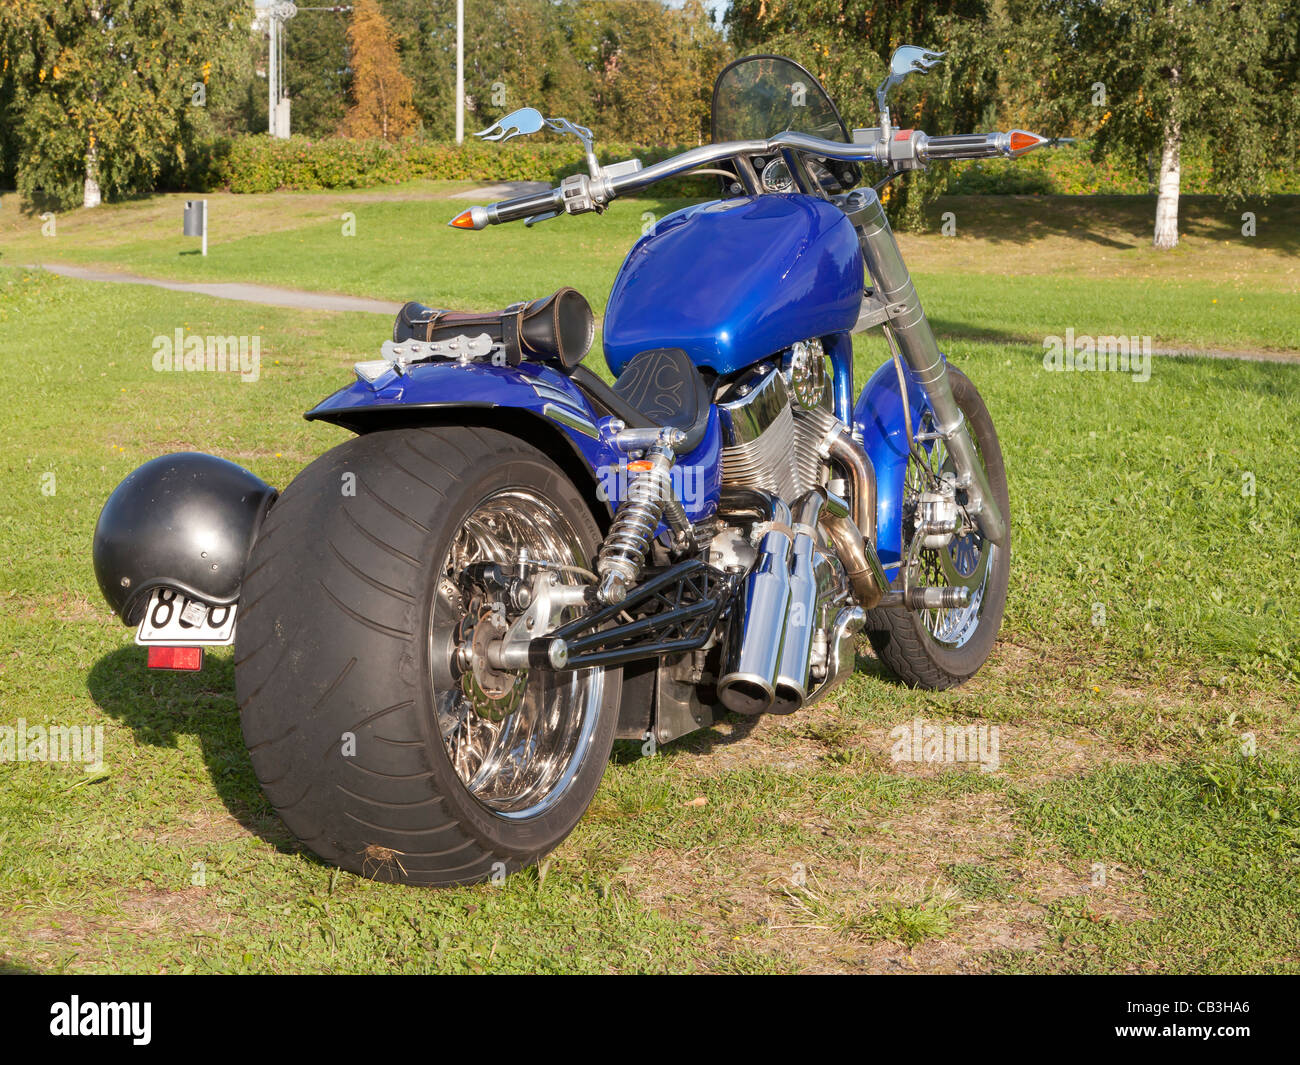 Suzuki Intruder motorcycle by the park in summer. Stock Photo